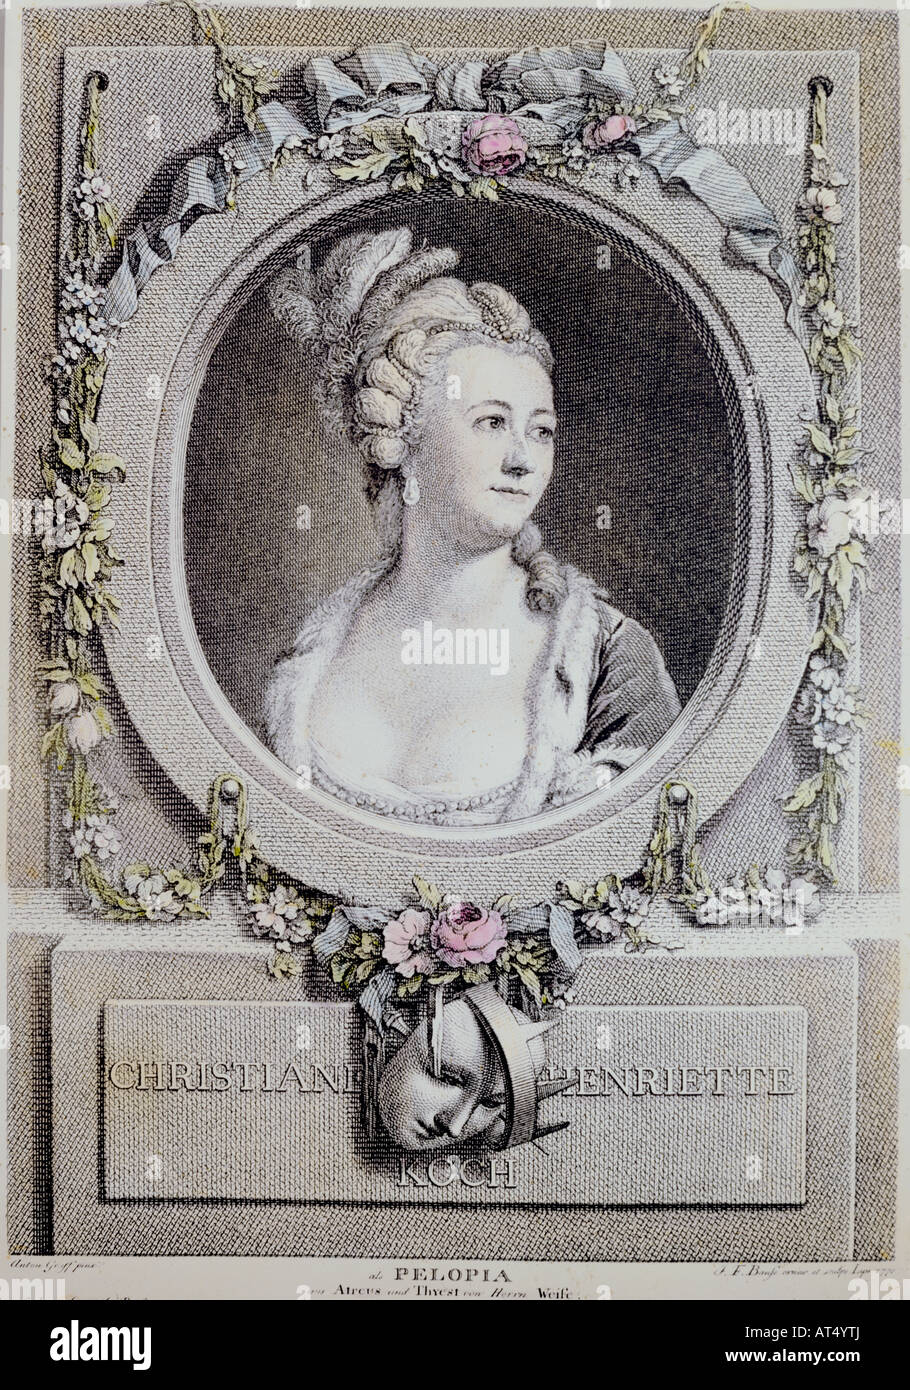 Beaux-arts, Graff, Anton (1736-1813), portrait de l'actrice Christiane Henriette Koch, gravure sur cuivre, colorés, par J. F. Brause, Leipzig, Allemagne, 1772, basé sur une peinture de Graff, collection privée, l'artiste n'a pas d'auteur pour être effacé Banque D'Images